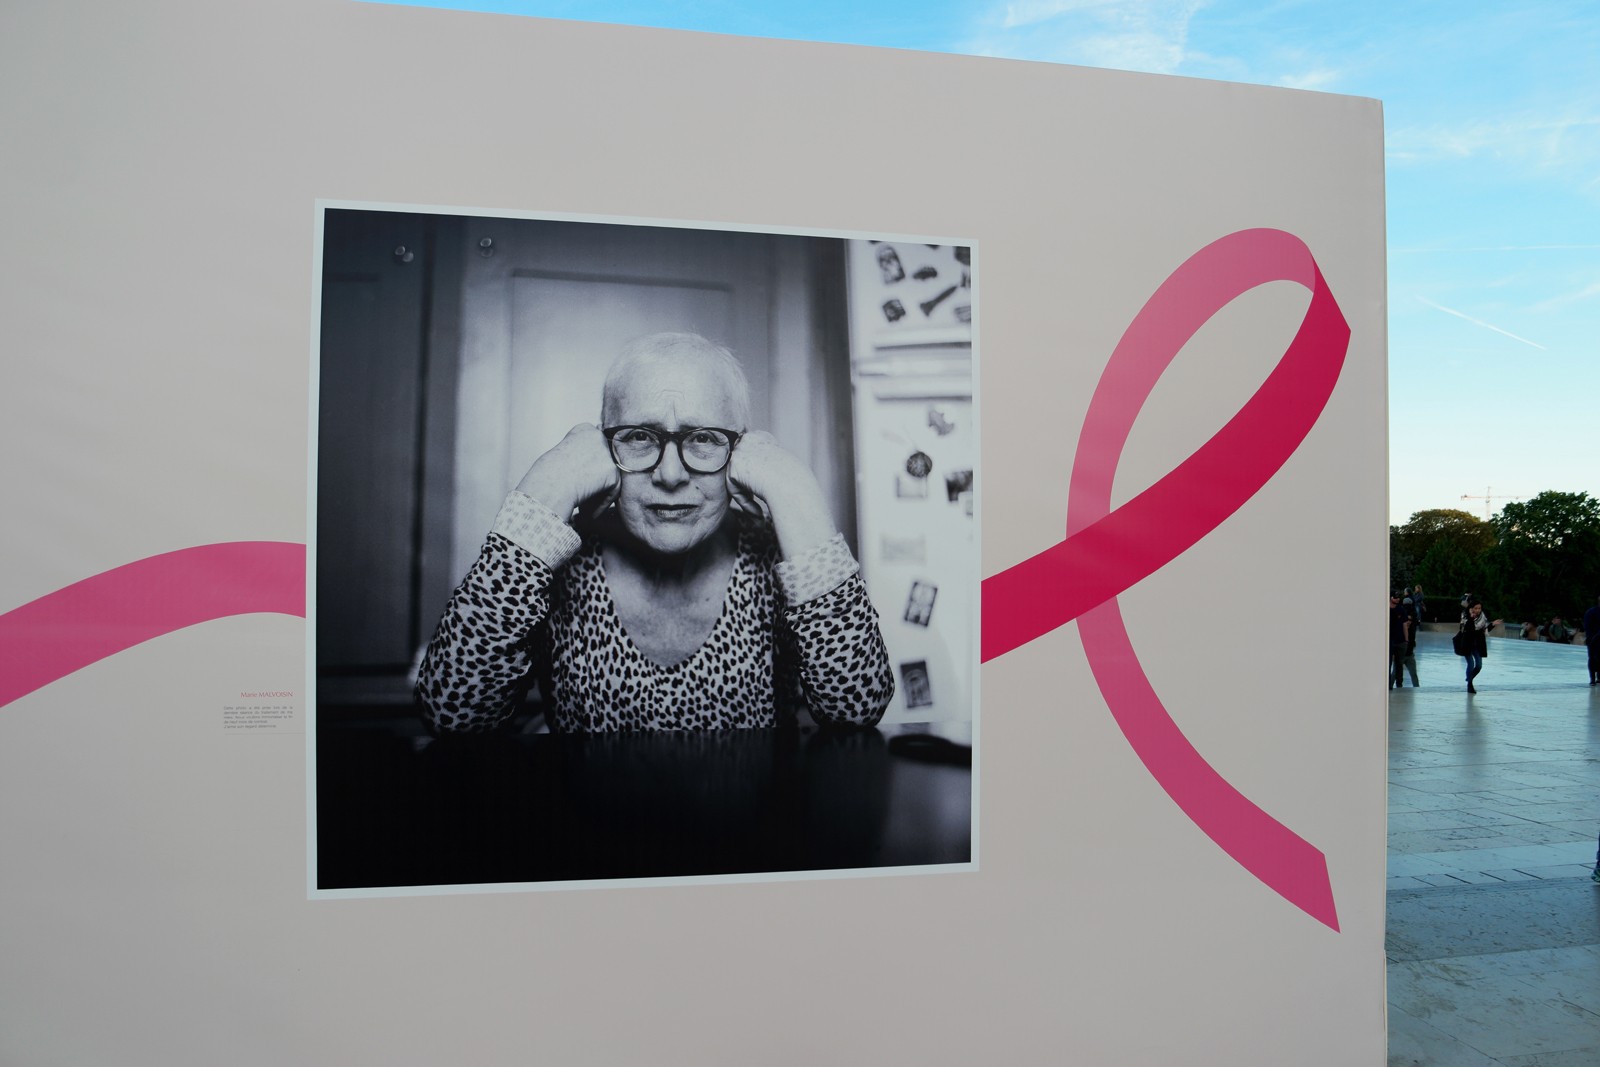 Photo lauréate concours Pink Ribbon award Estée Lauder exposition Octobre Rose 2015 Parvis Trocadéro Tour Eiffel Paris cancer du sein parlons-en photo usofparis